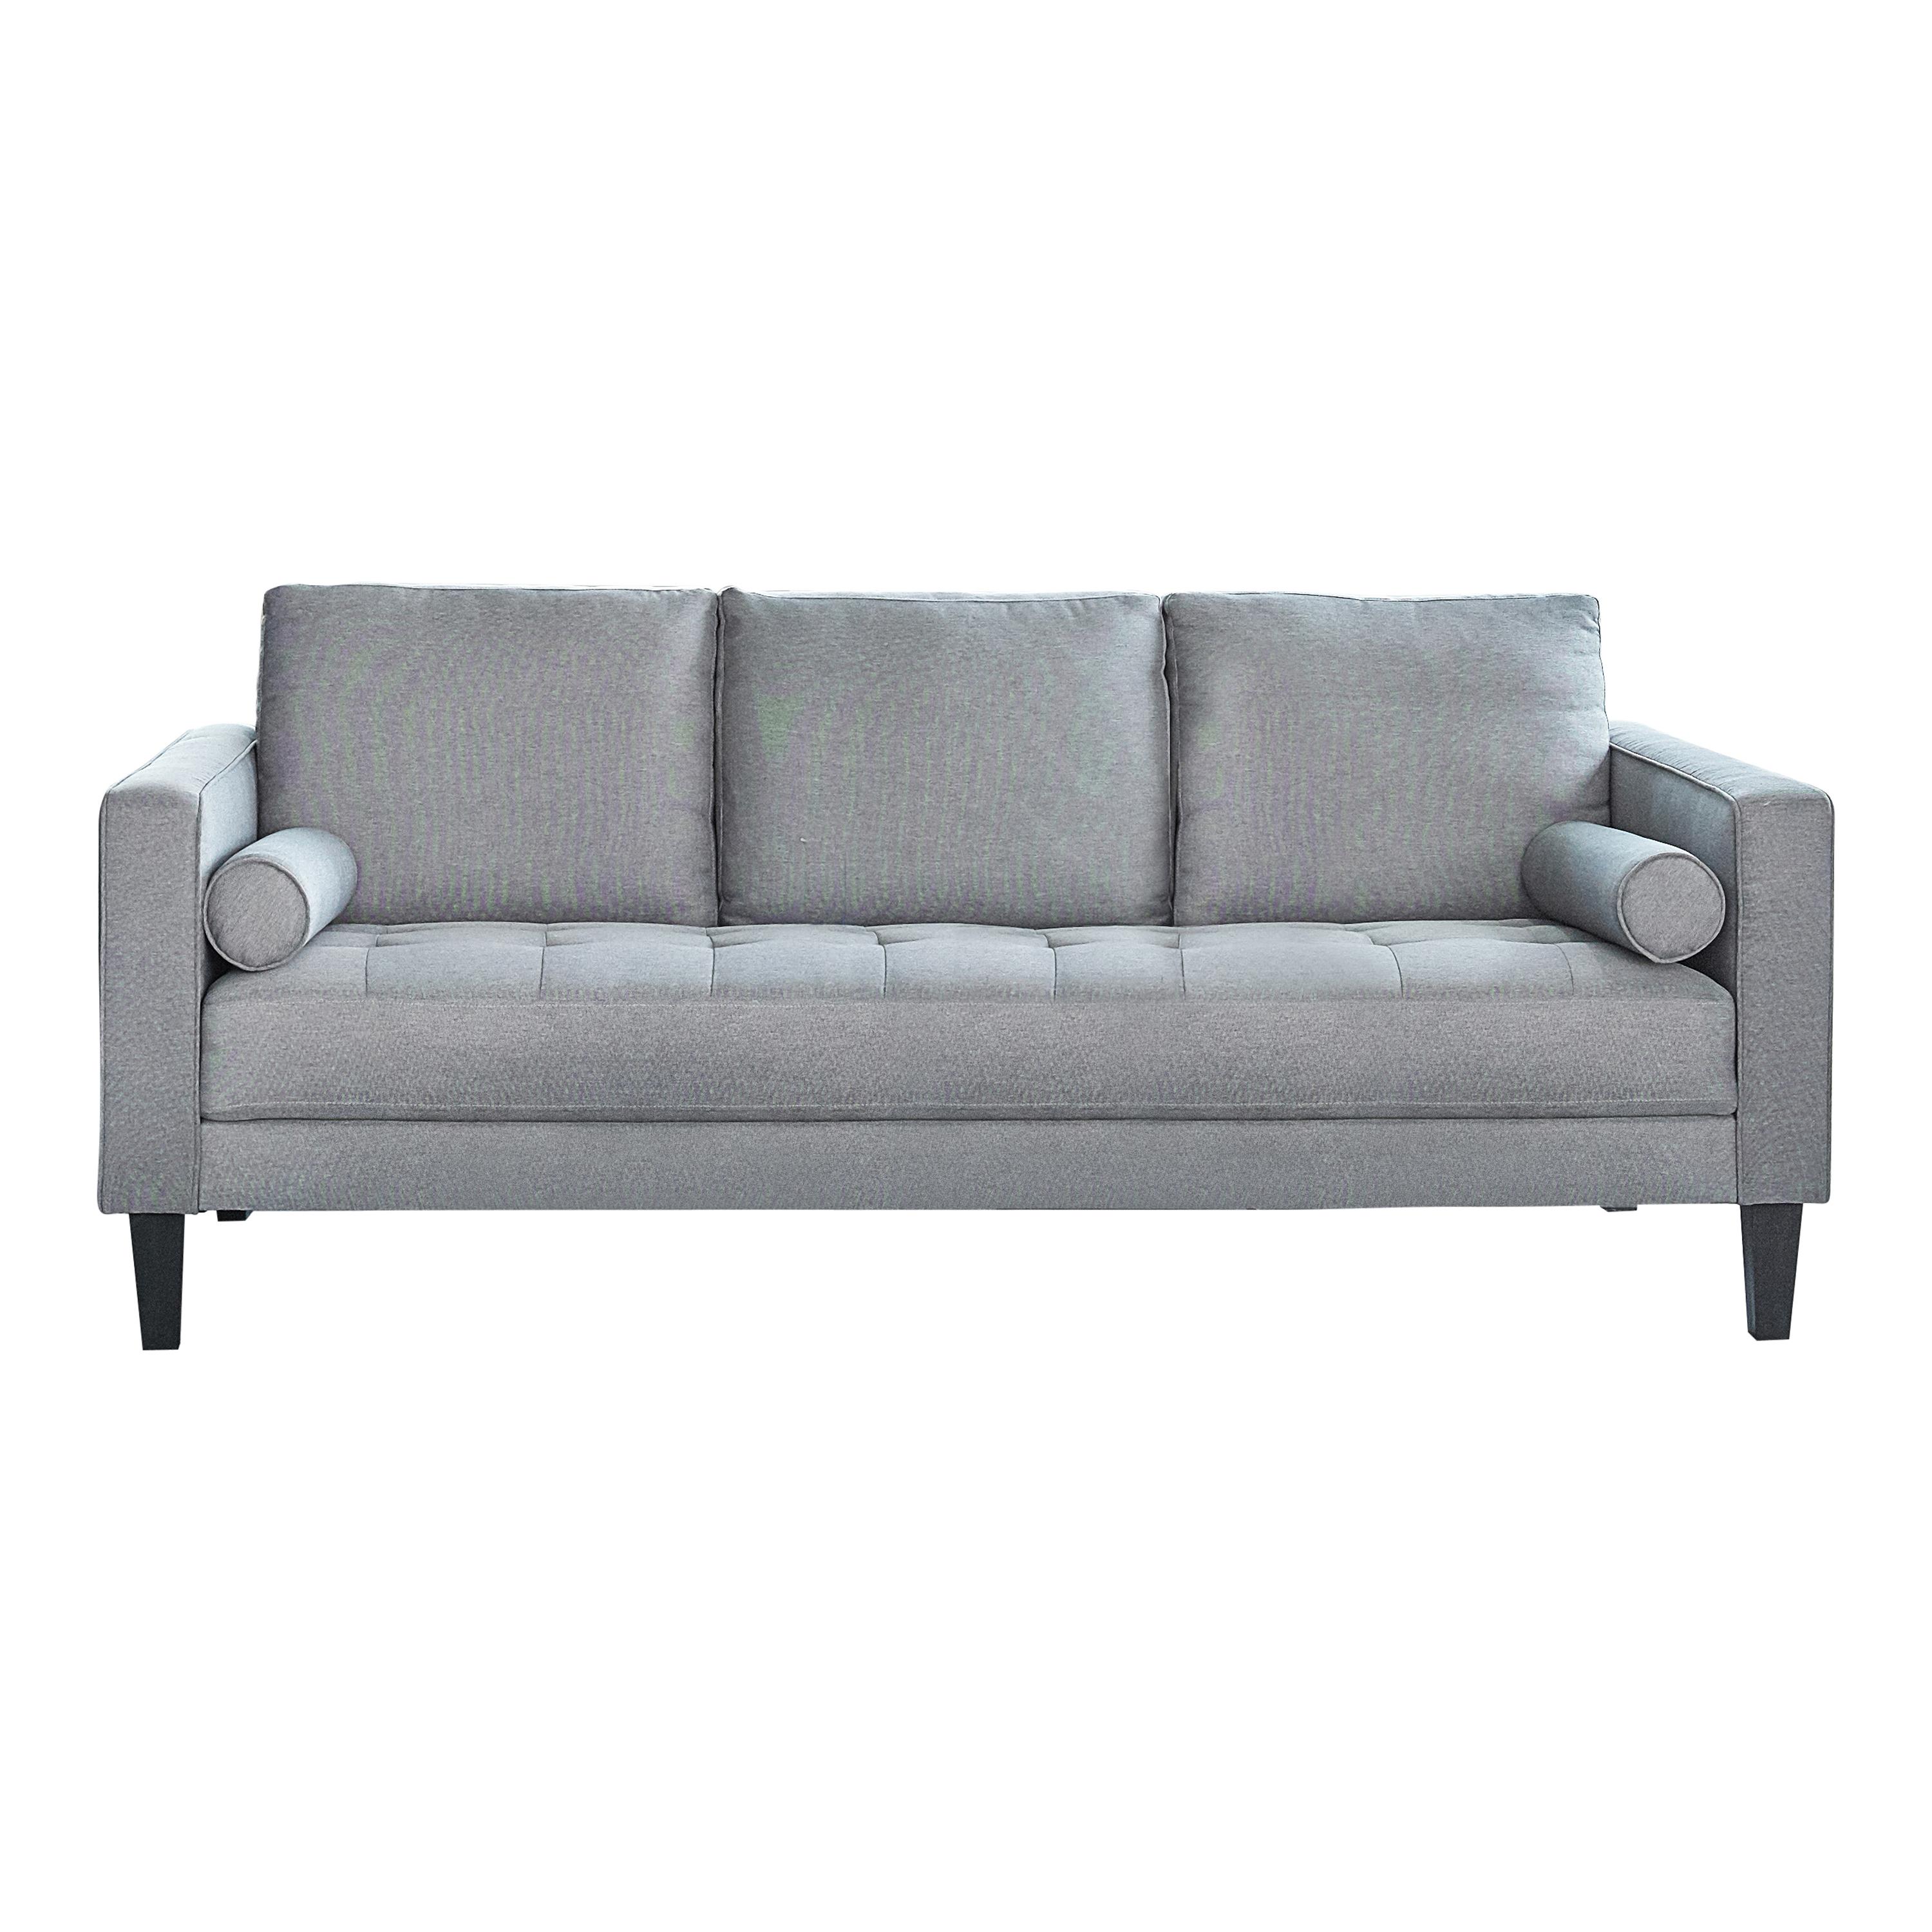 Modern Sofa 509051 Lennox 509051 in Charcoal 